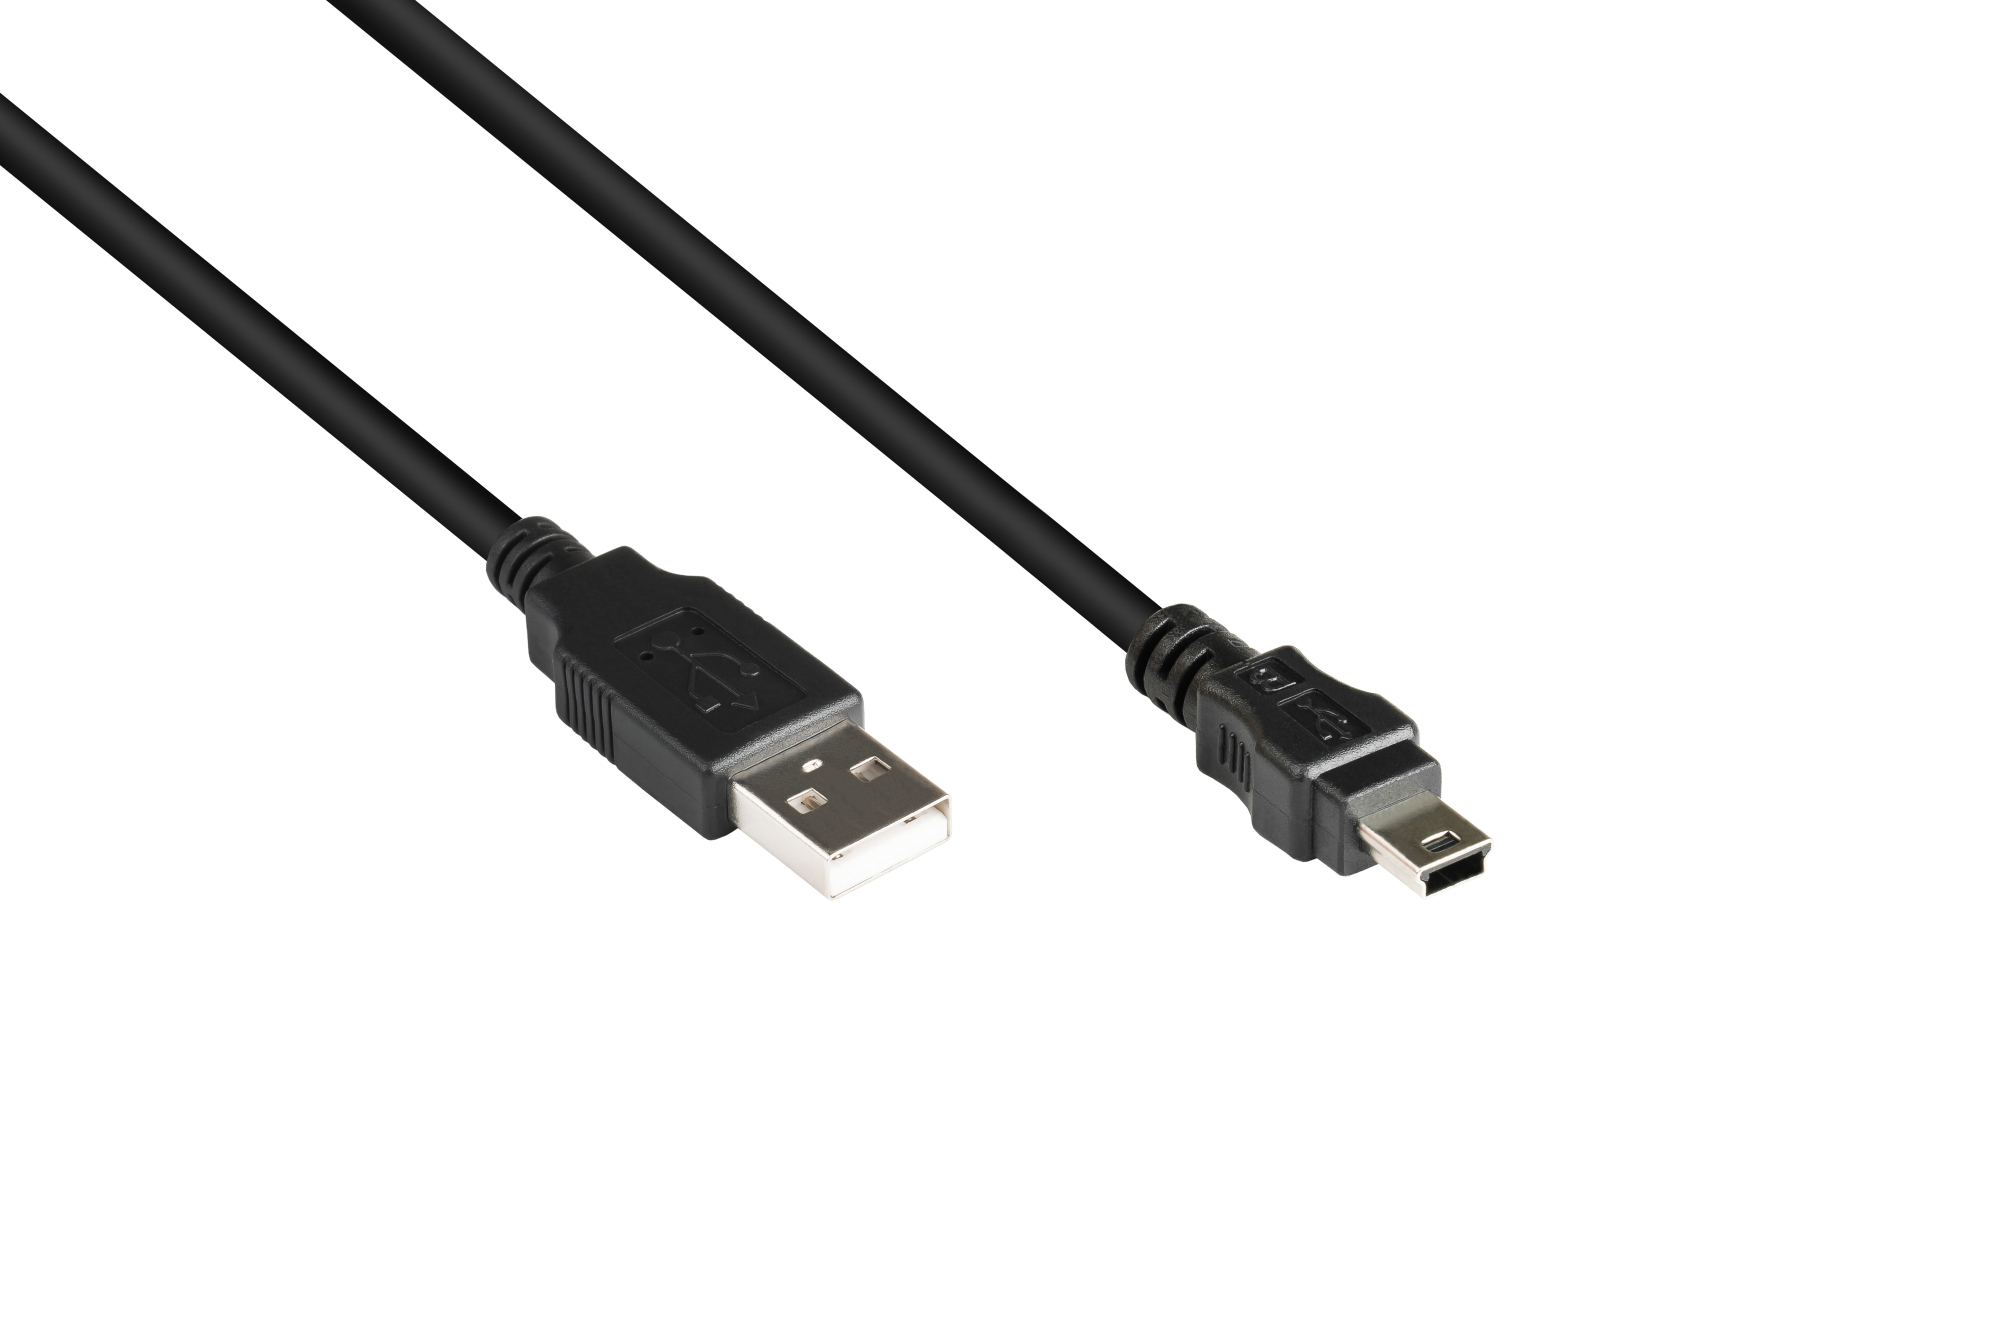 Anschlusskabel USB 2.0 Stecker A an Stecker Mini B 5-pin, schwarz, 1m, Good Connections®